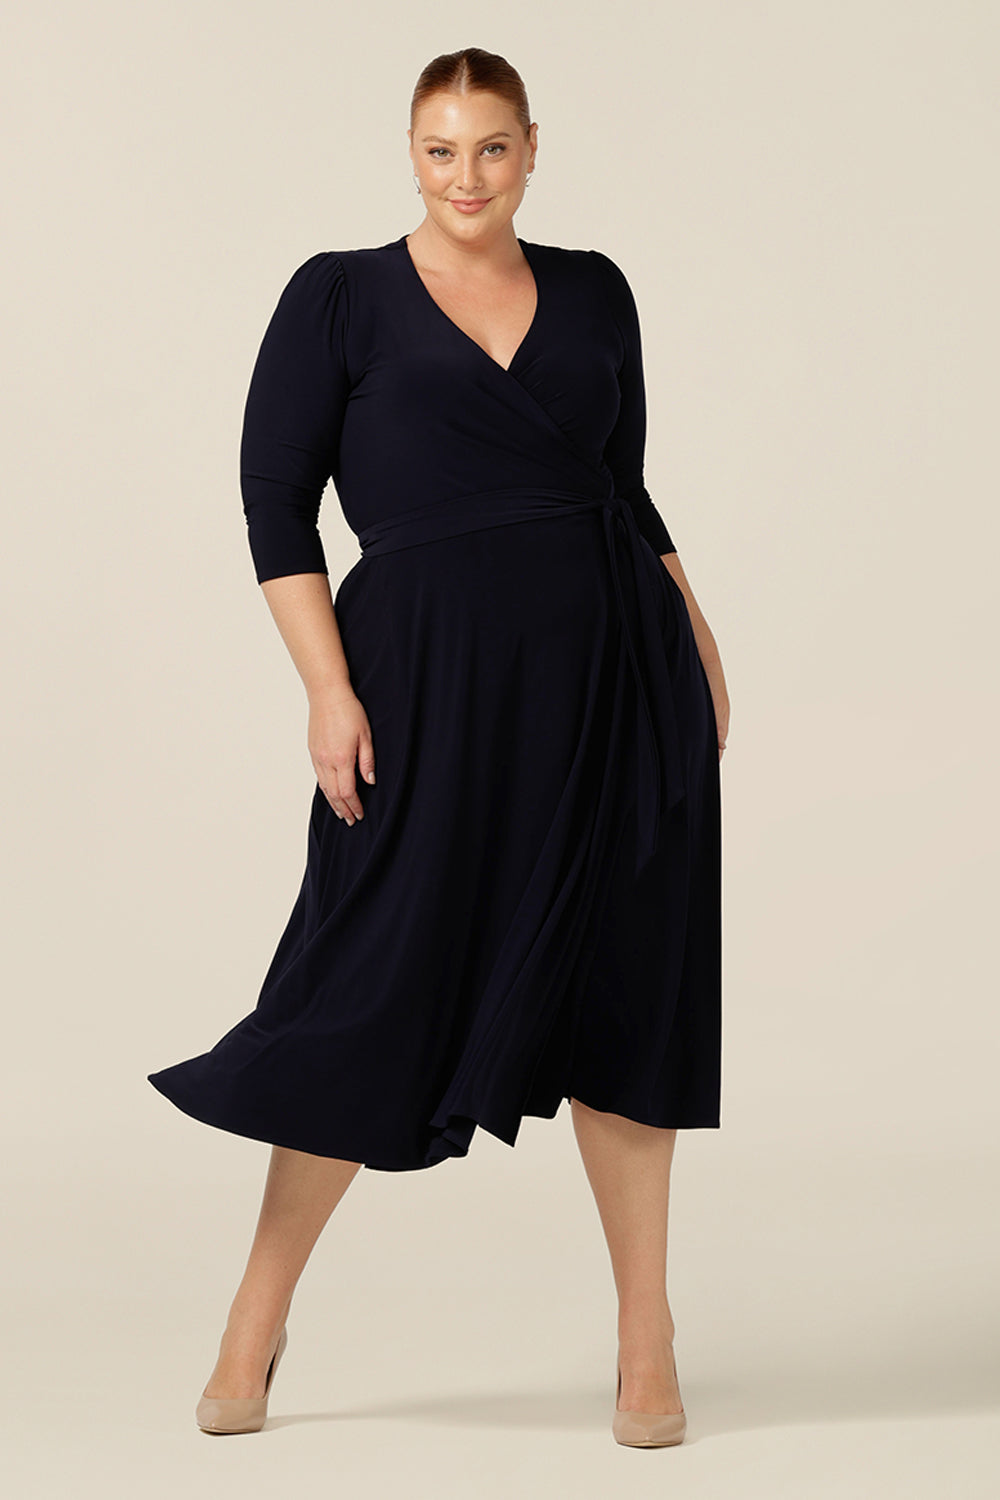 a size 18, fuller figure woman wears a jersey wrap dress in navy blue by Australian and New Zealand womenswear brand, L&F.